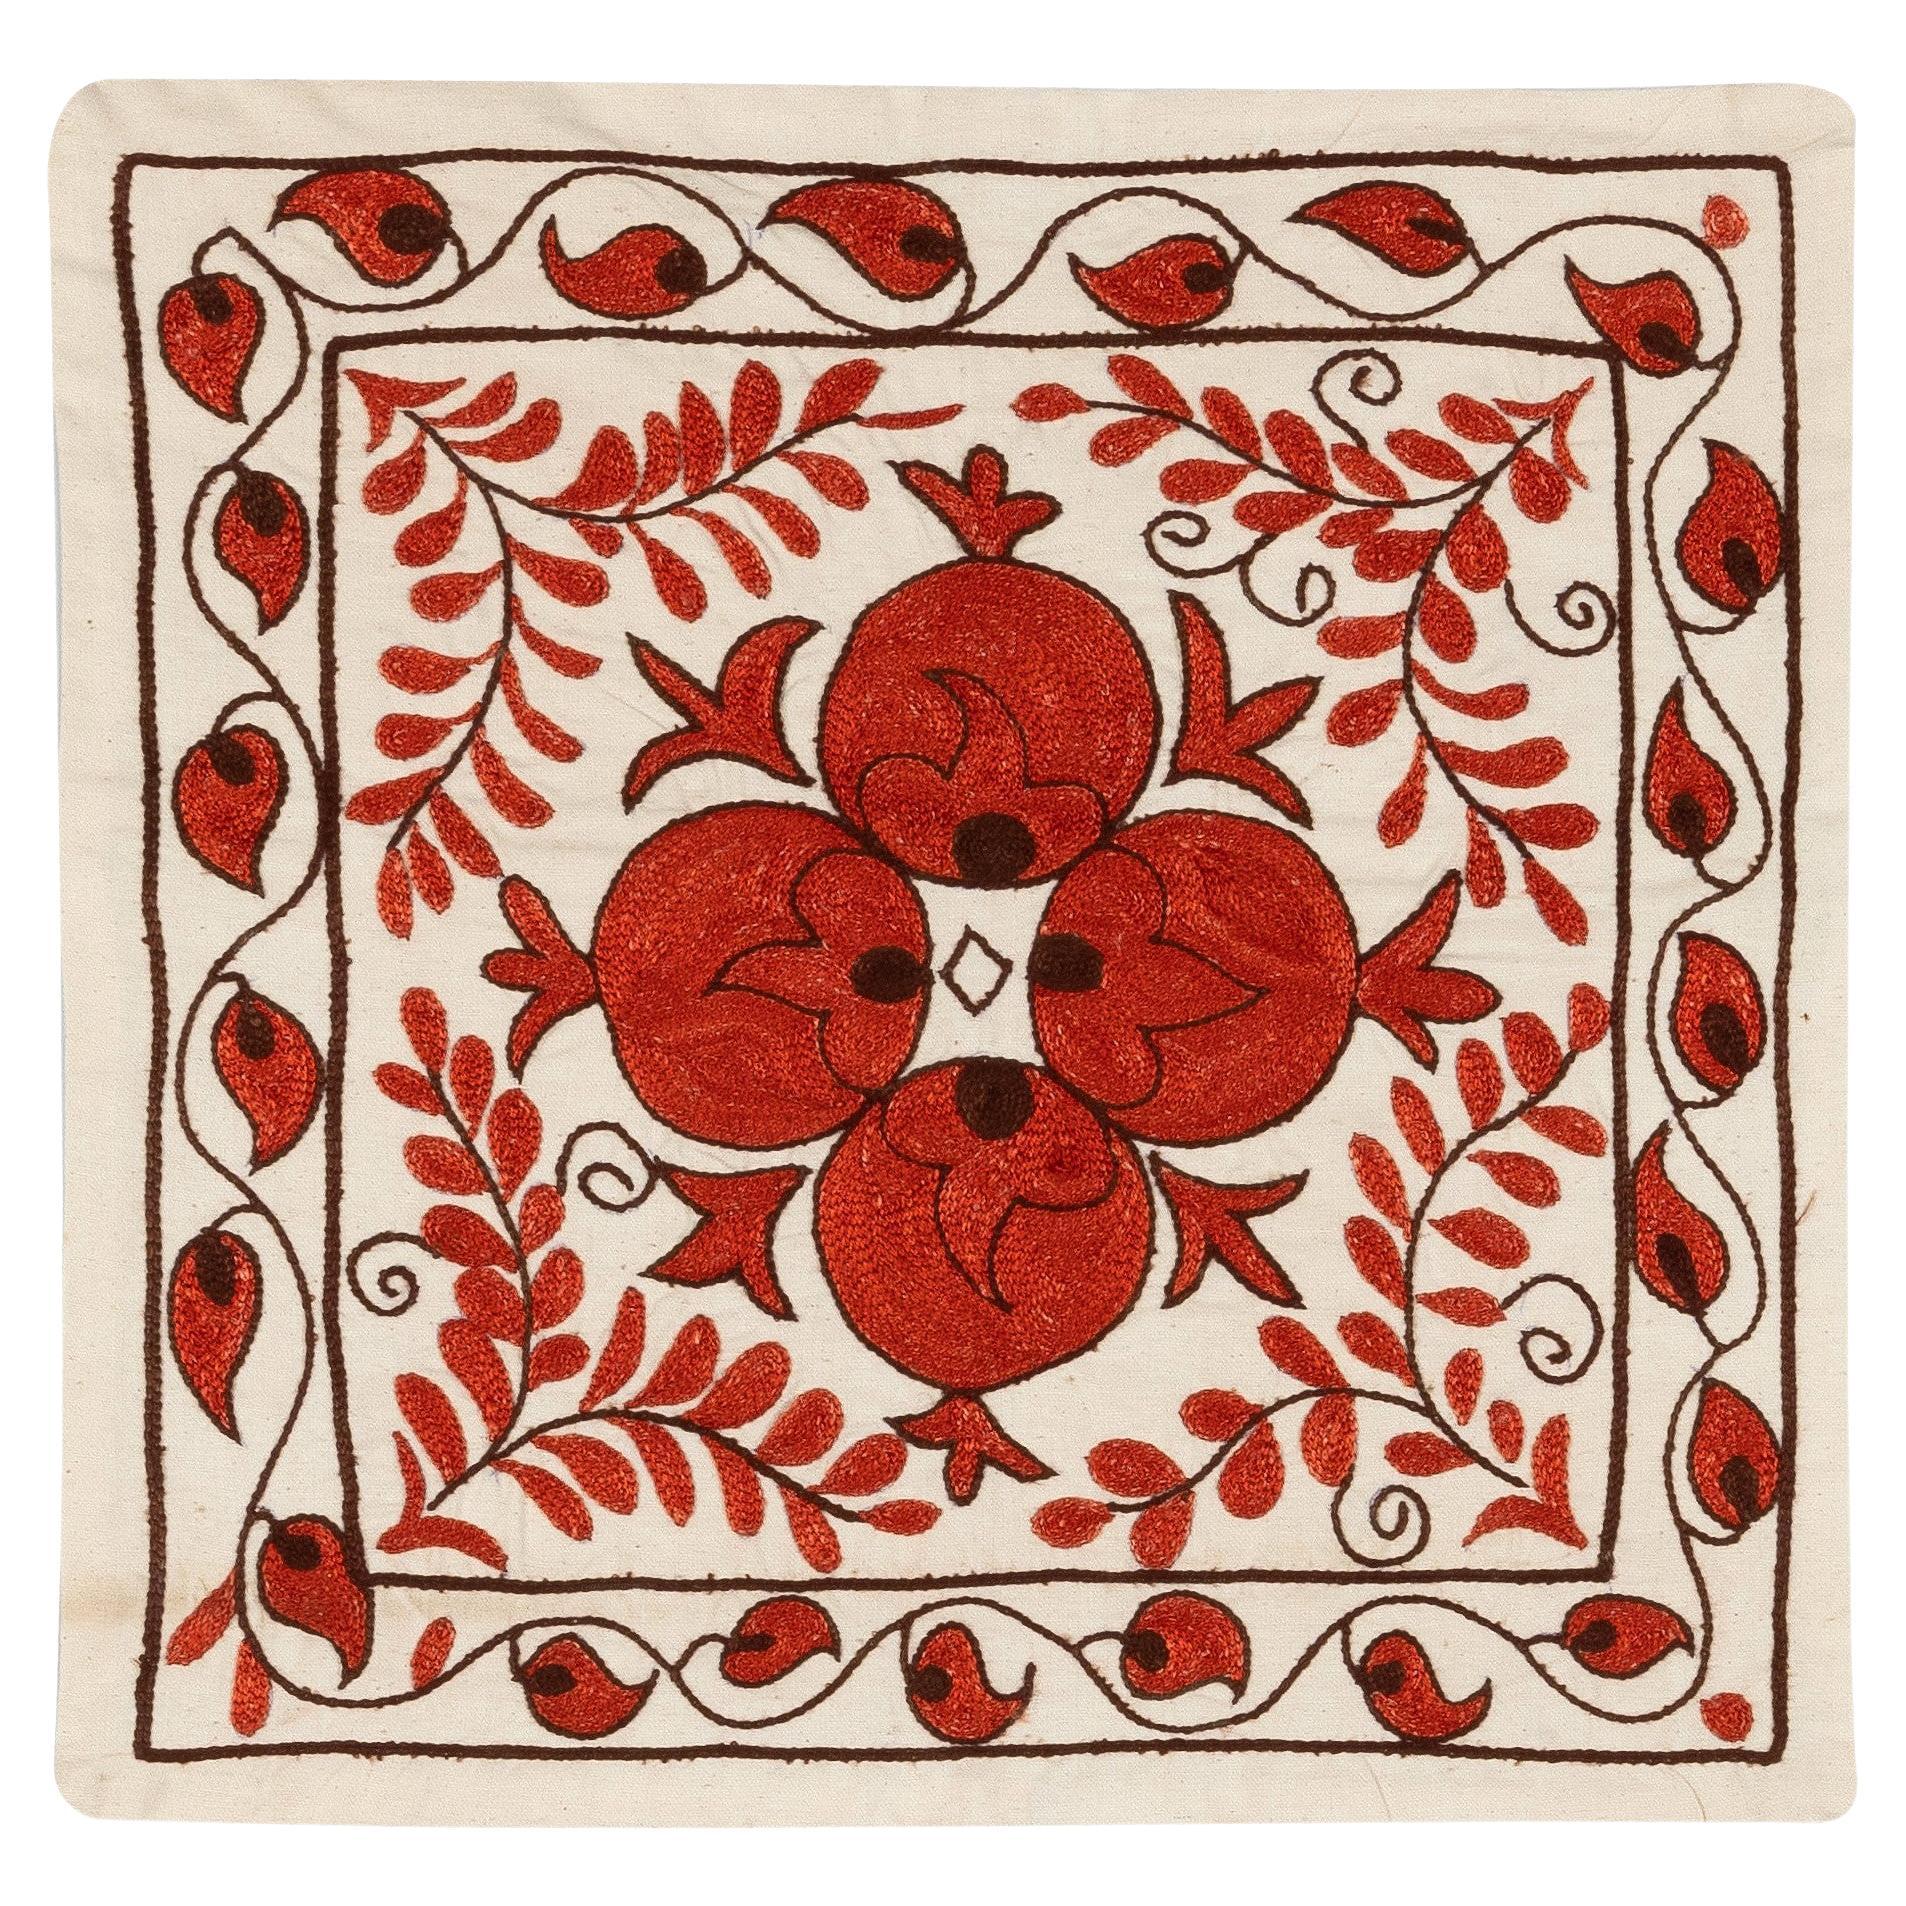 17"x18" Seiden-Stickerei-Kissenbezug, traditionelles Toss-Kissen in Rot und Creme